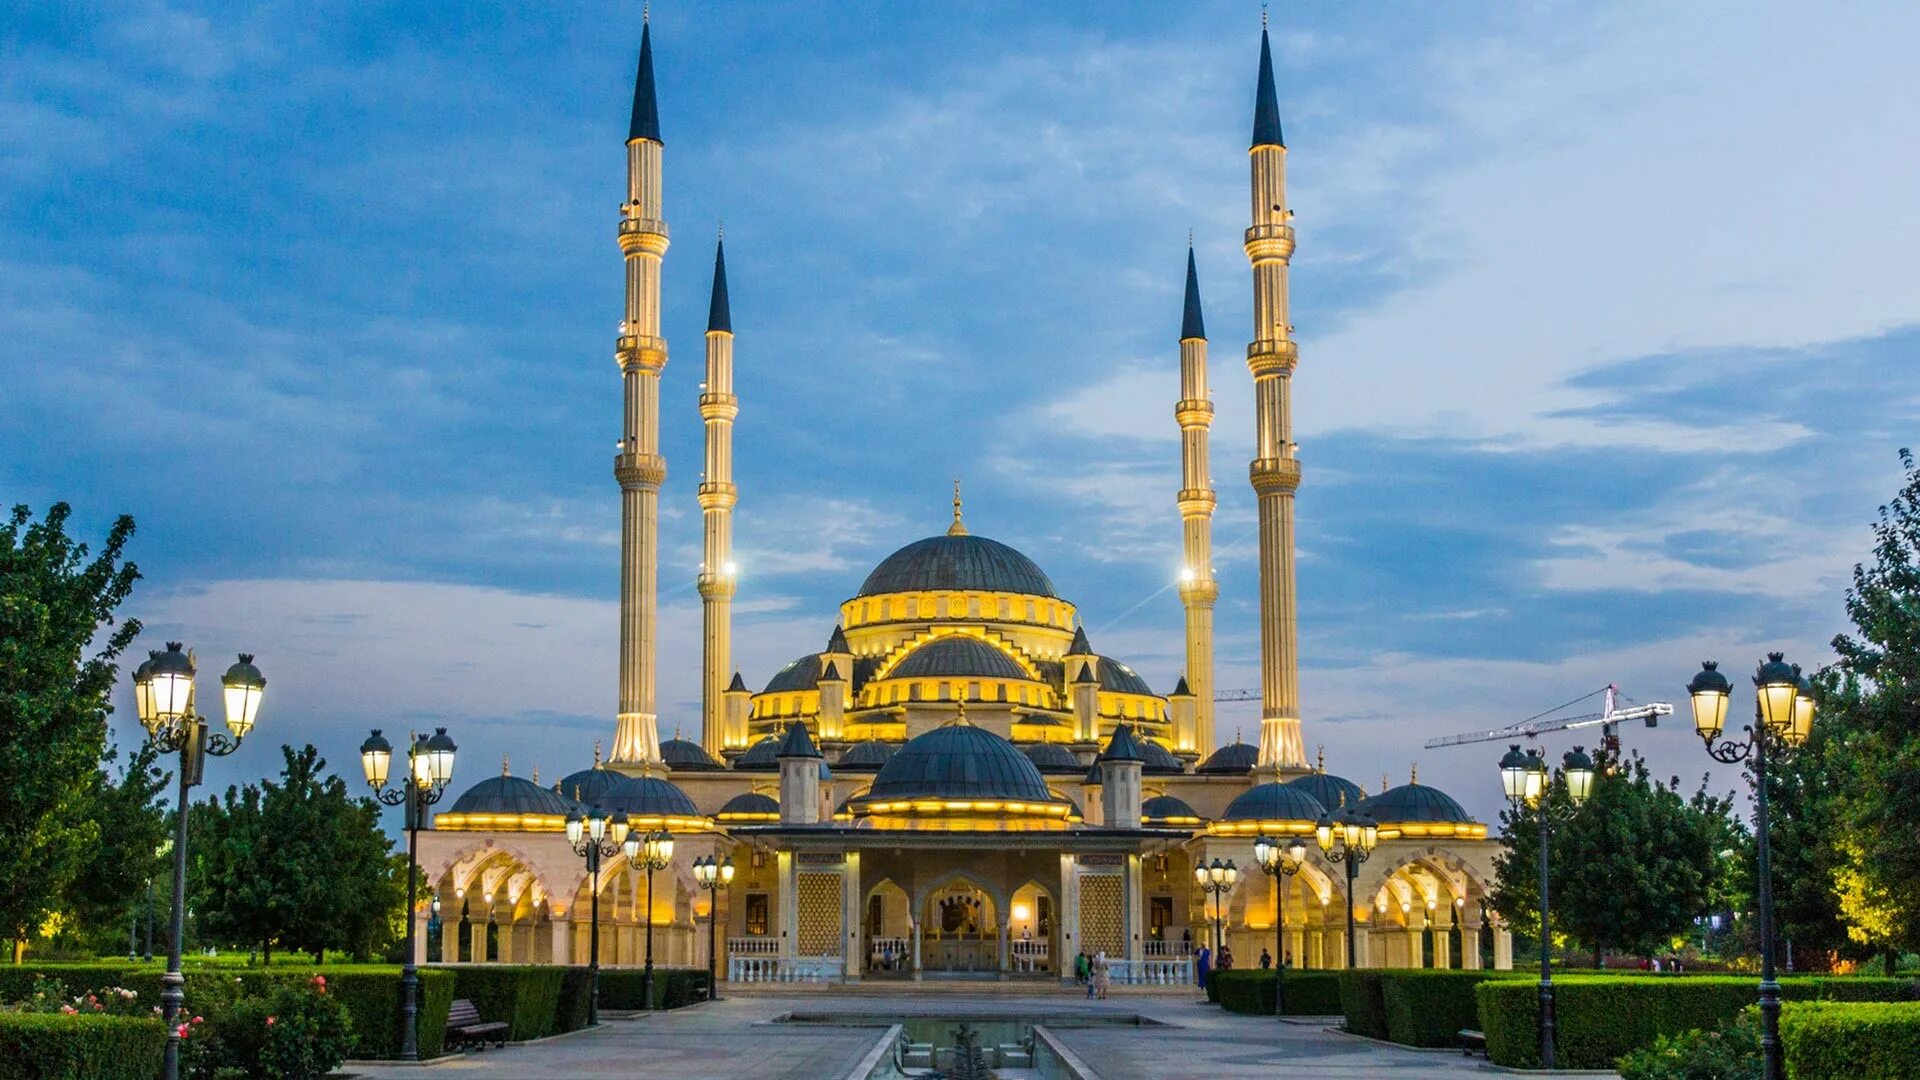 Город назвали грозным. Мечеть сердце Чечни в Грозном. Чечня, г. Грозный. Мечеть "сердце Чечни". Мечеть имени Ахмат-Хаджи Кадырова. Мечеть имени Ахмата Кадырова сердце Чечни.